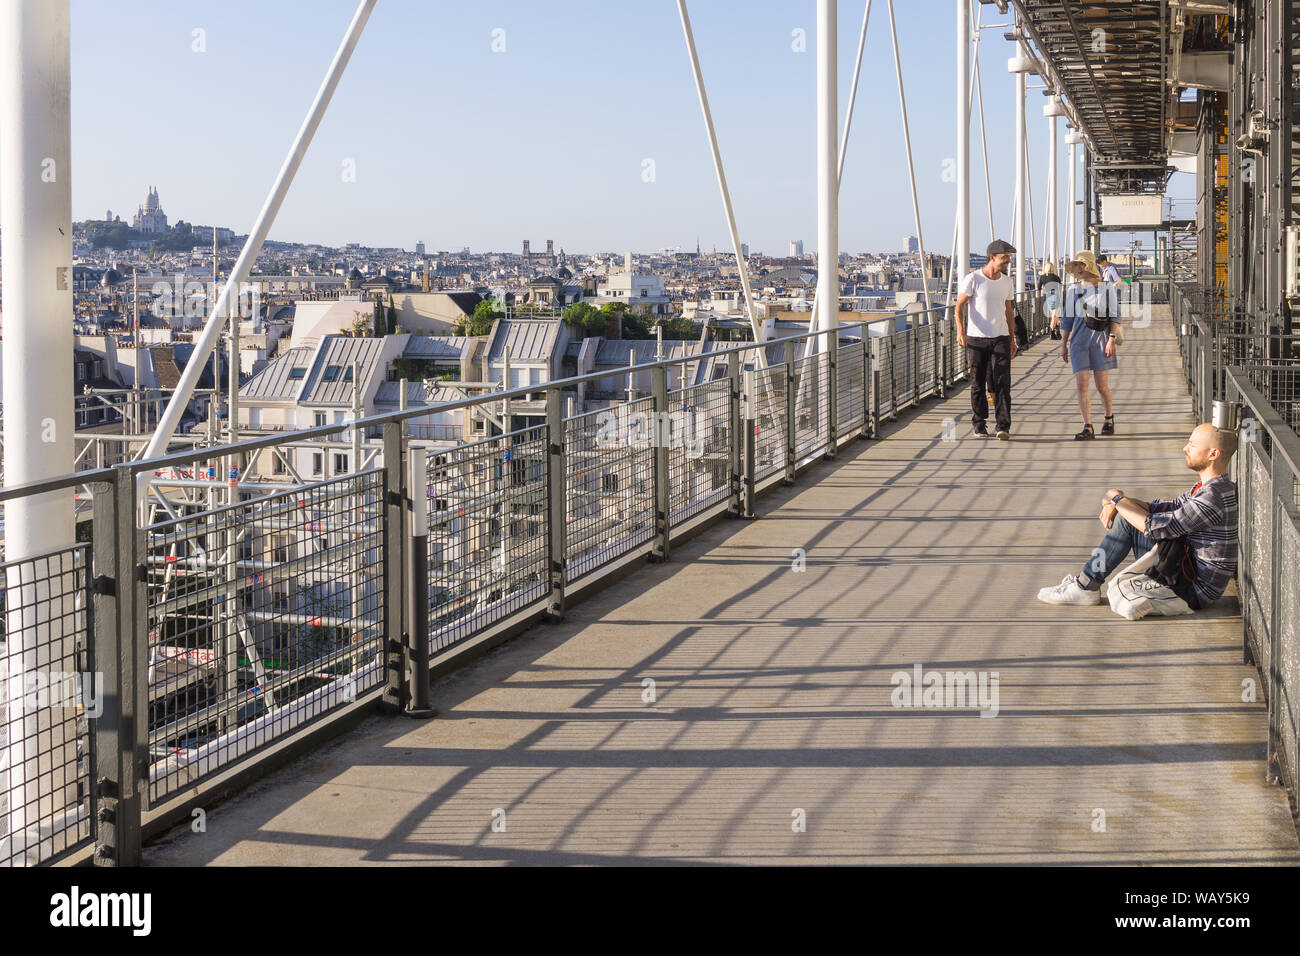 Centre Pompidou Paris - Les personnes bénéficiant de l'ensoleillement de l'après-midi sur la plate-forme du Centre Pompidou avec une vue aérienne de Paris. La France, l'Europe. Banque D'Images